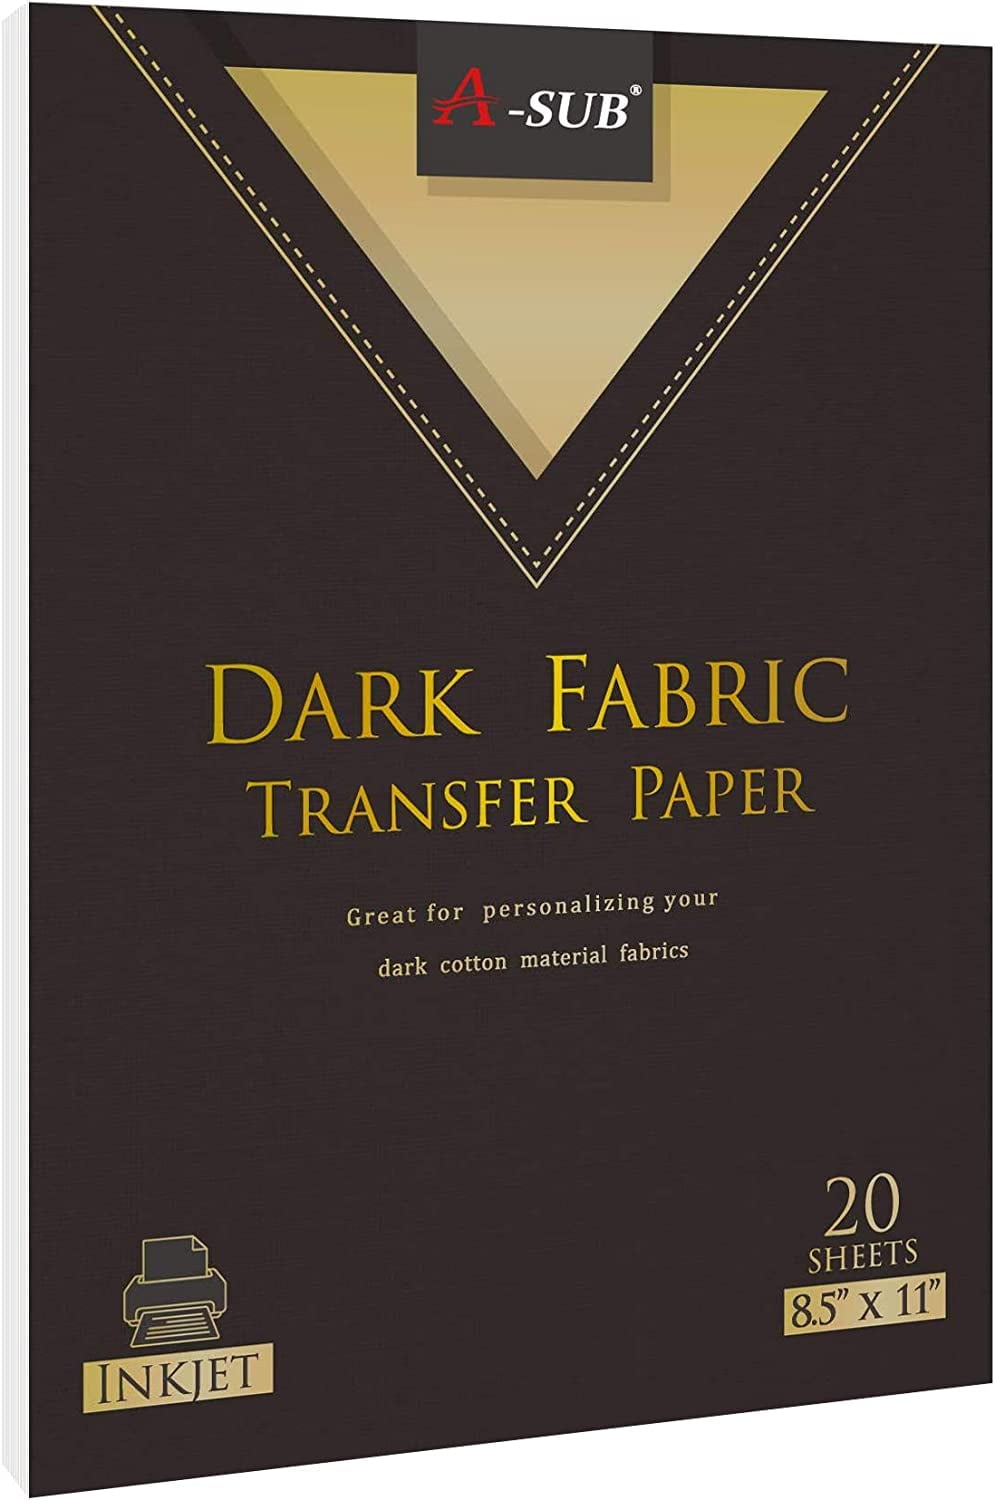 Sale* InkJet/Printable Dark Transfer Paper – 15pk